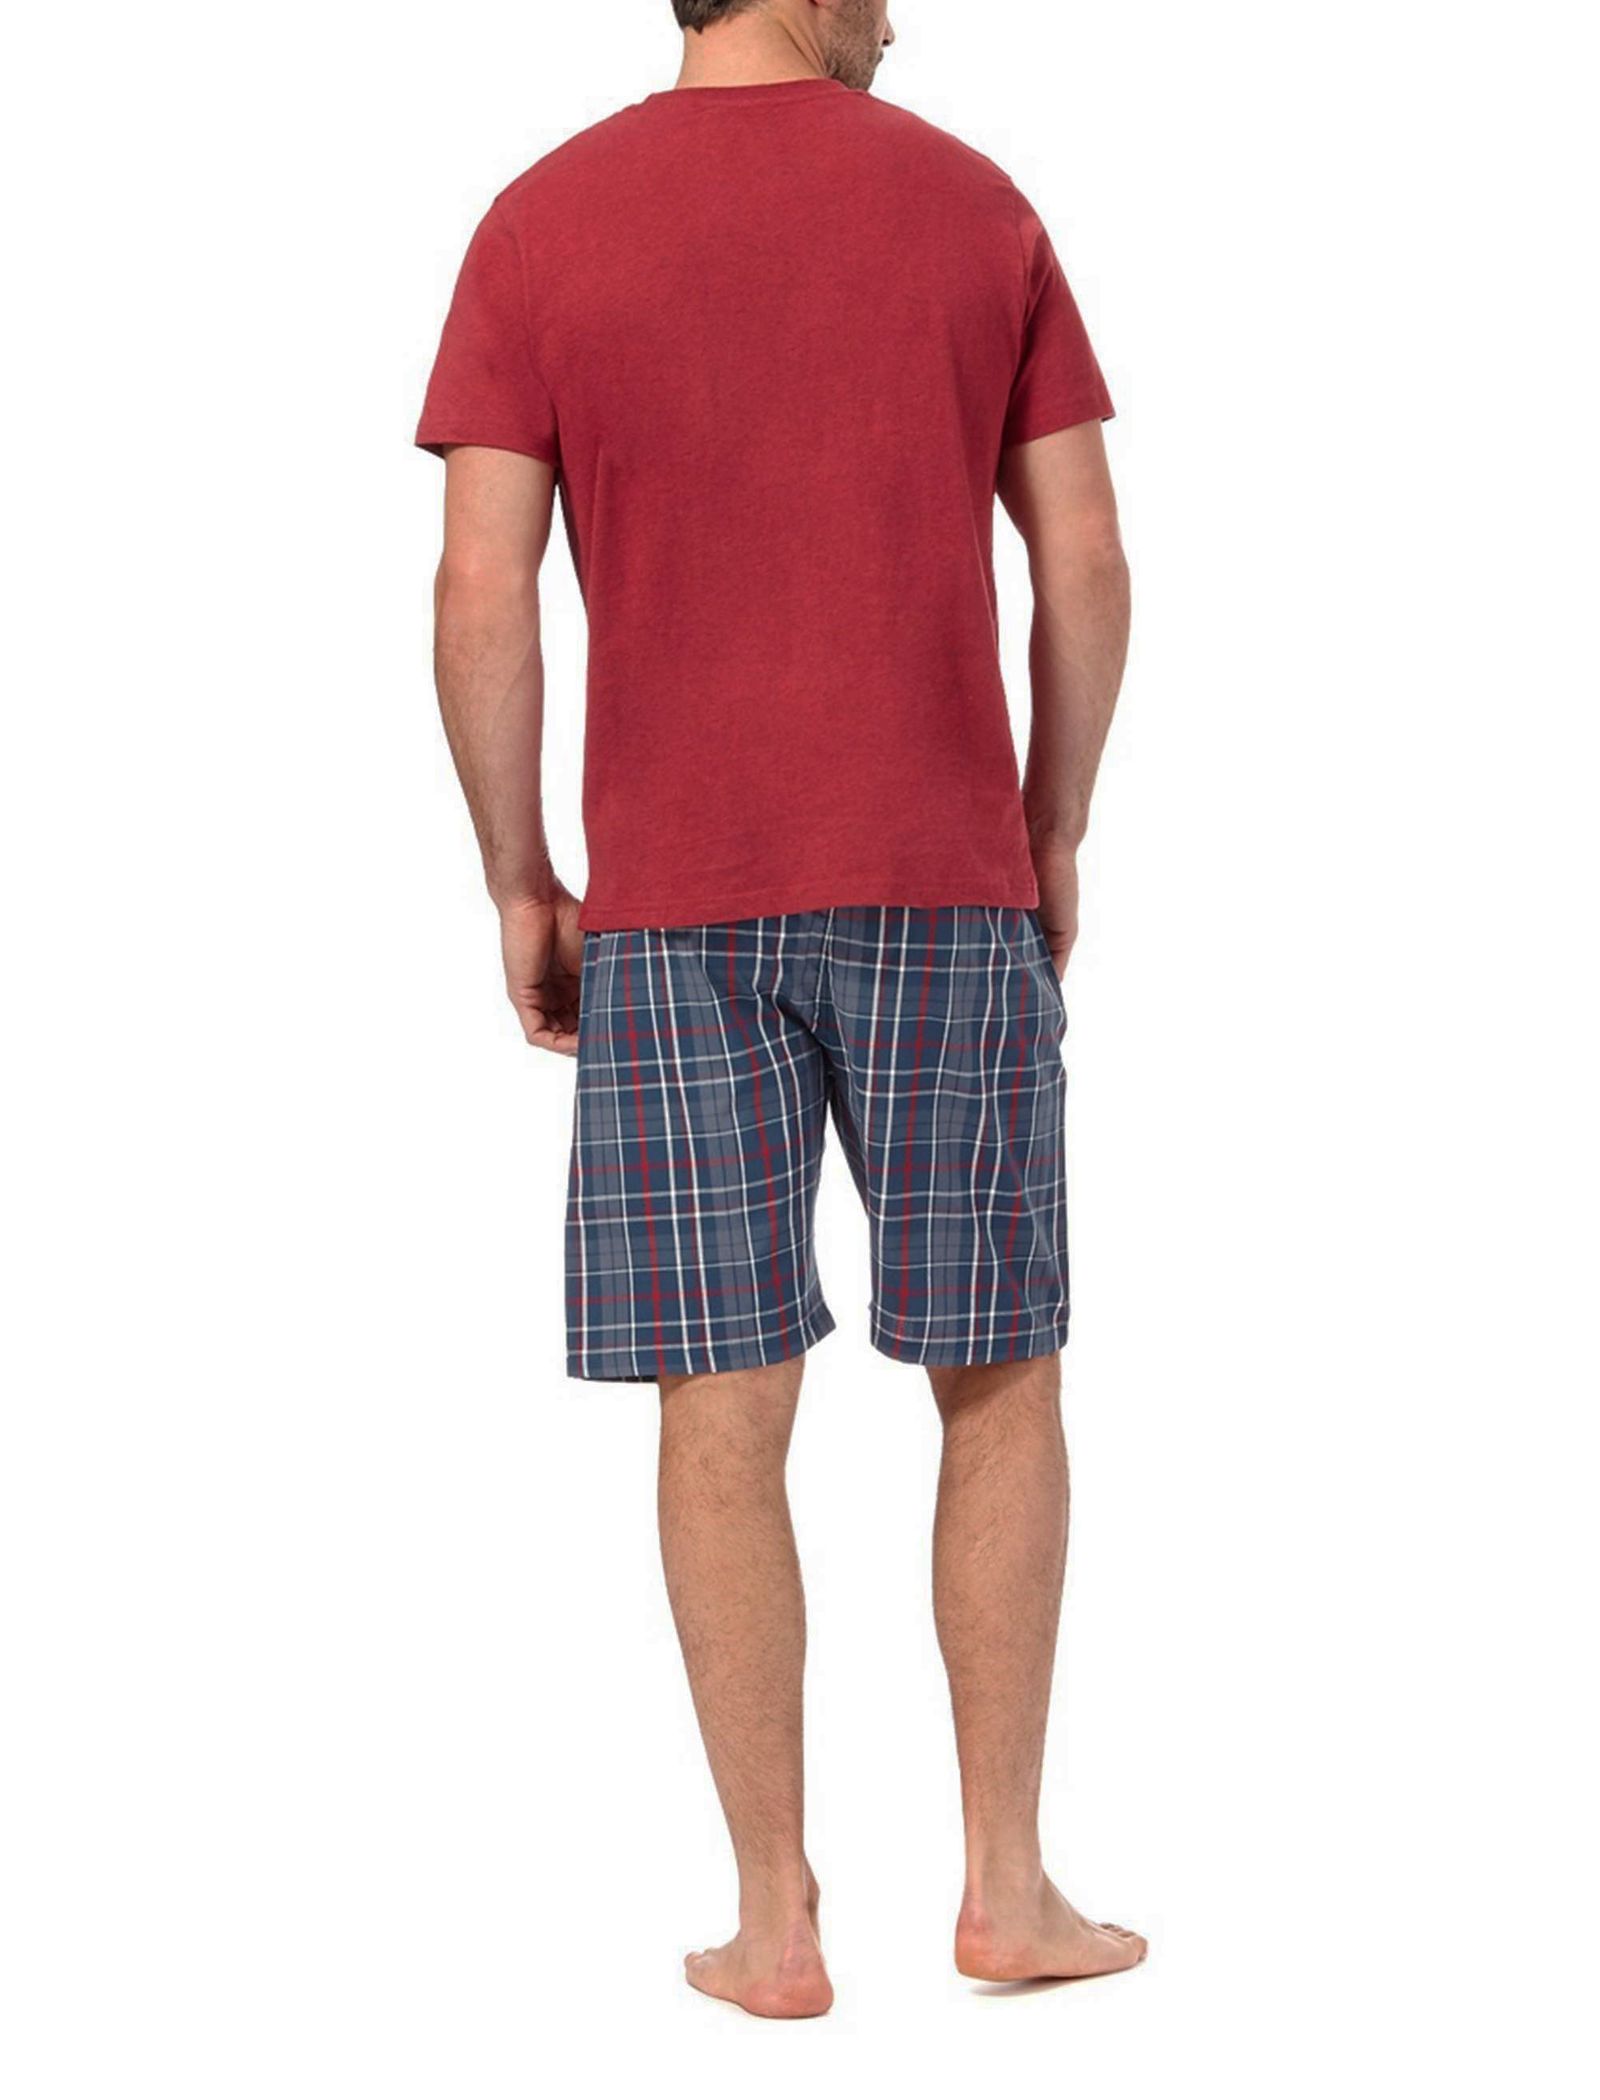 تی شرت و شلوارک راحتی نخی مردانه - مین نیو اینگلند - قرمز و آبي - 10